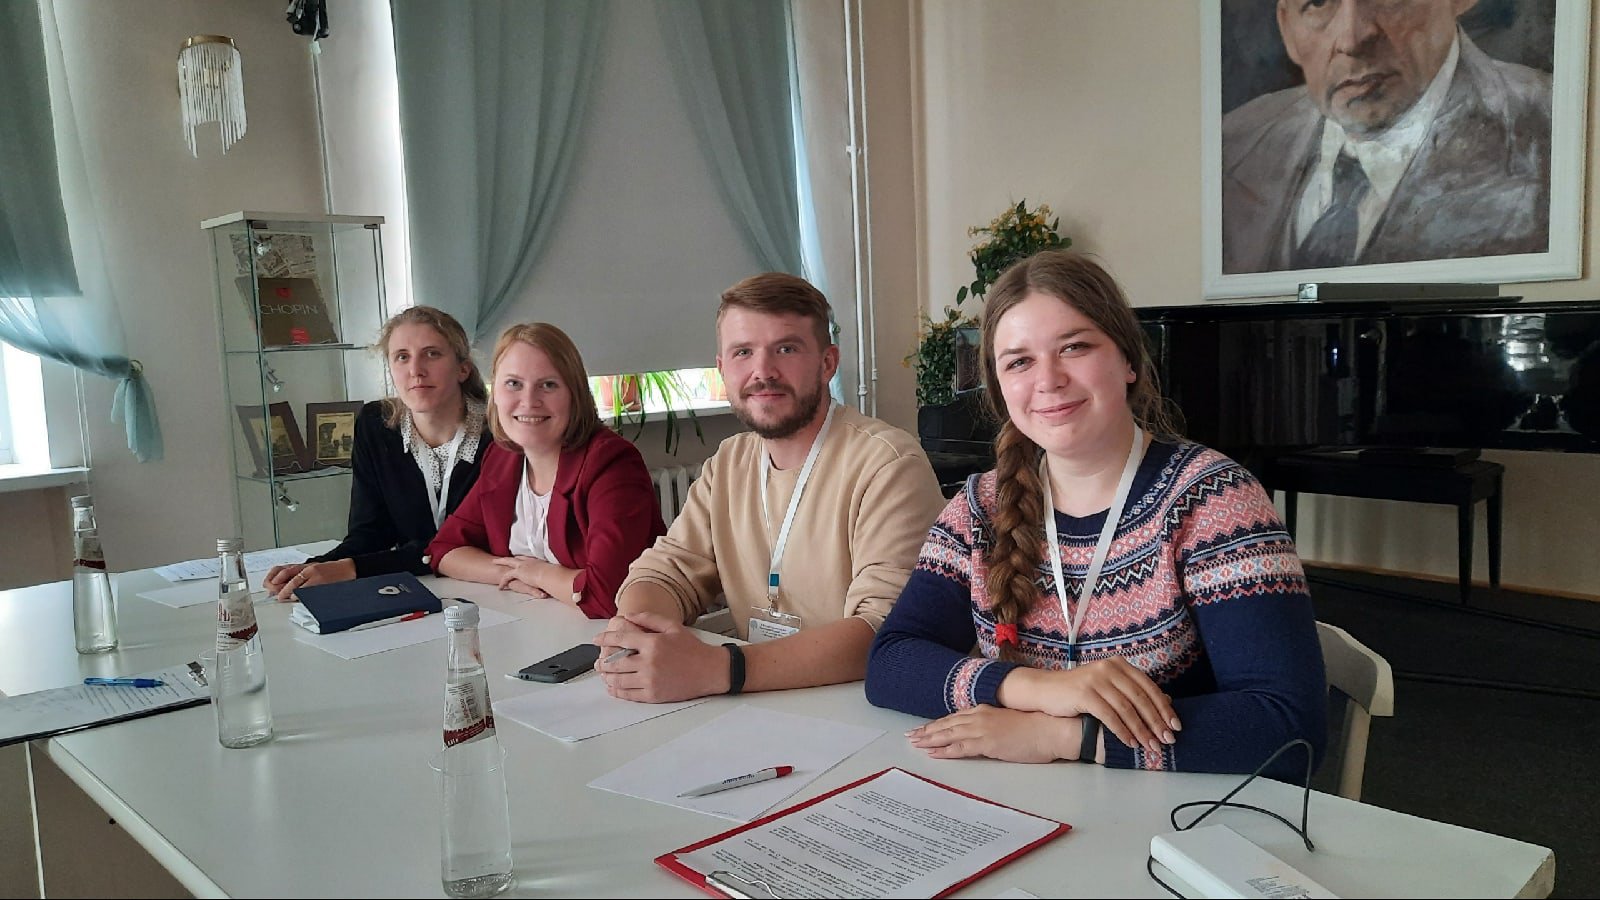 Представители Молодёжного центра приняли участие в X русских Ганзейских днях , которые прошли в этом году в Великом Новгороде 19-20 сентября.